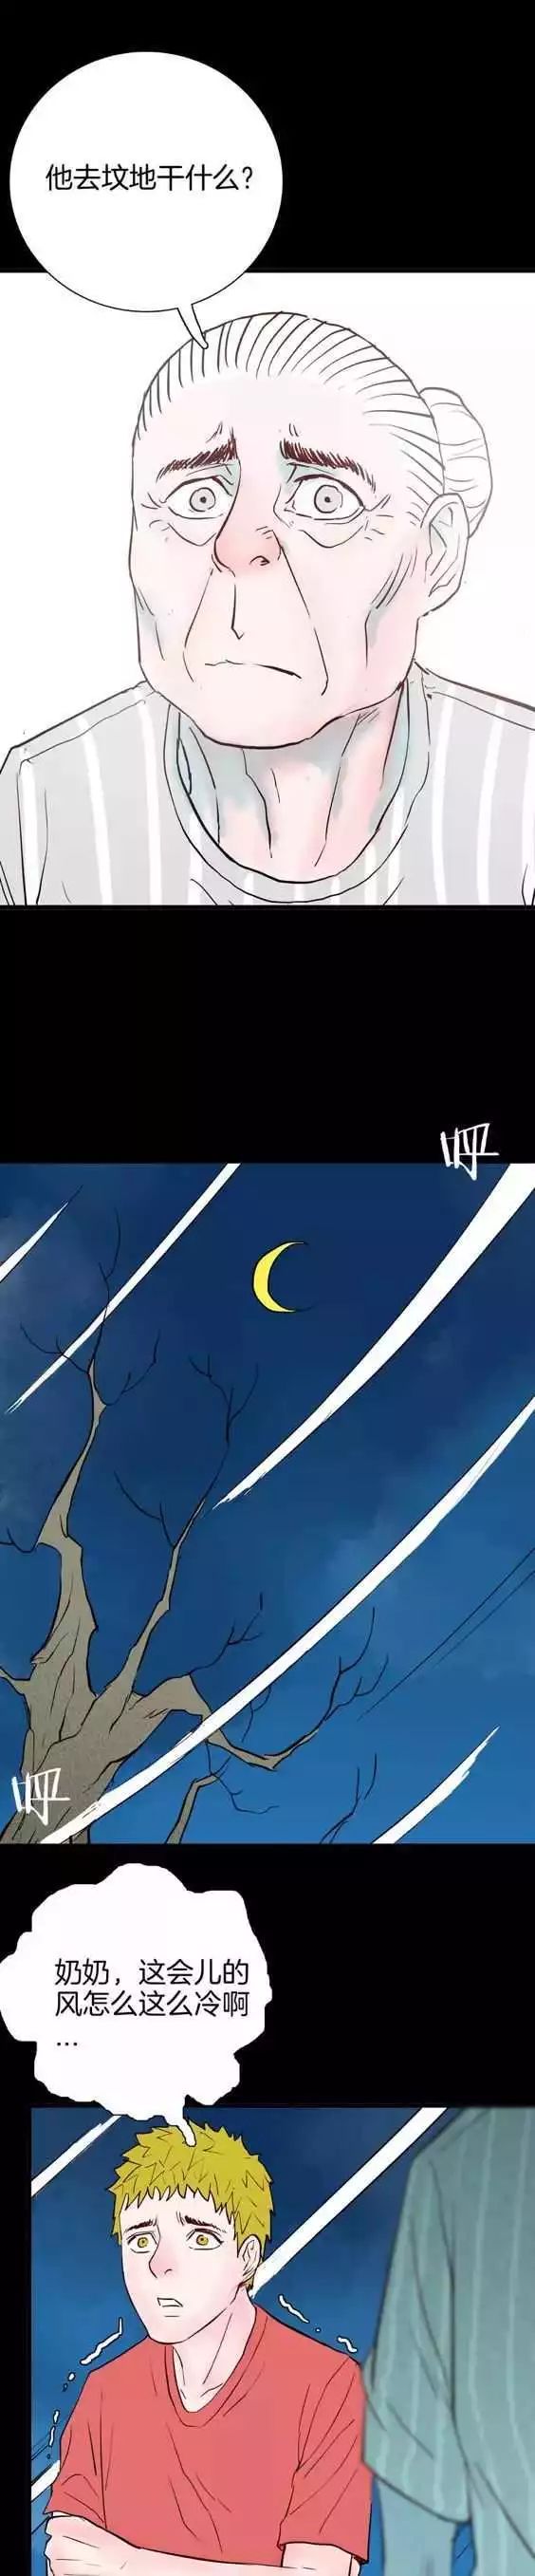 恐怖漫畫《元宵燈會》不能亂動的燈籠 靈異 第34張